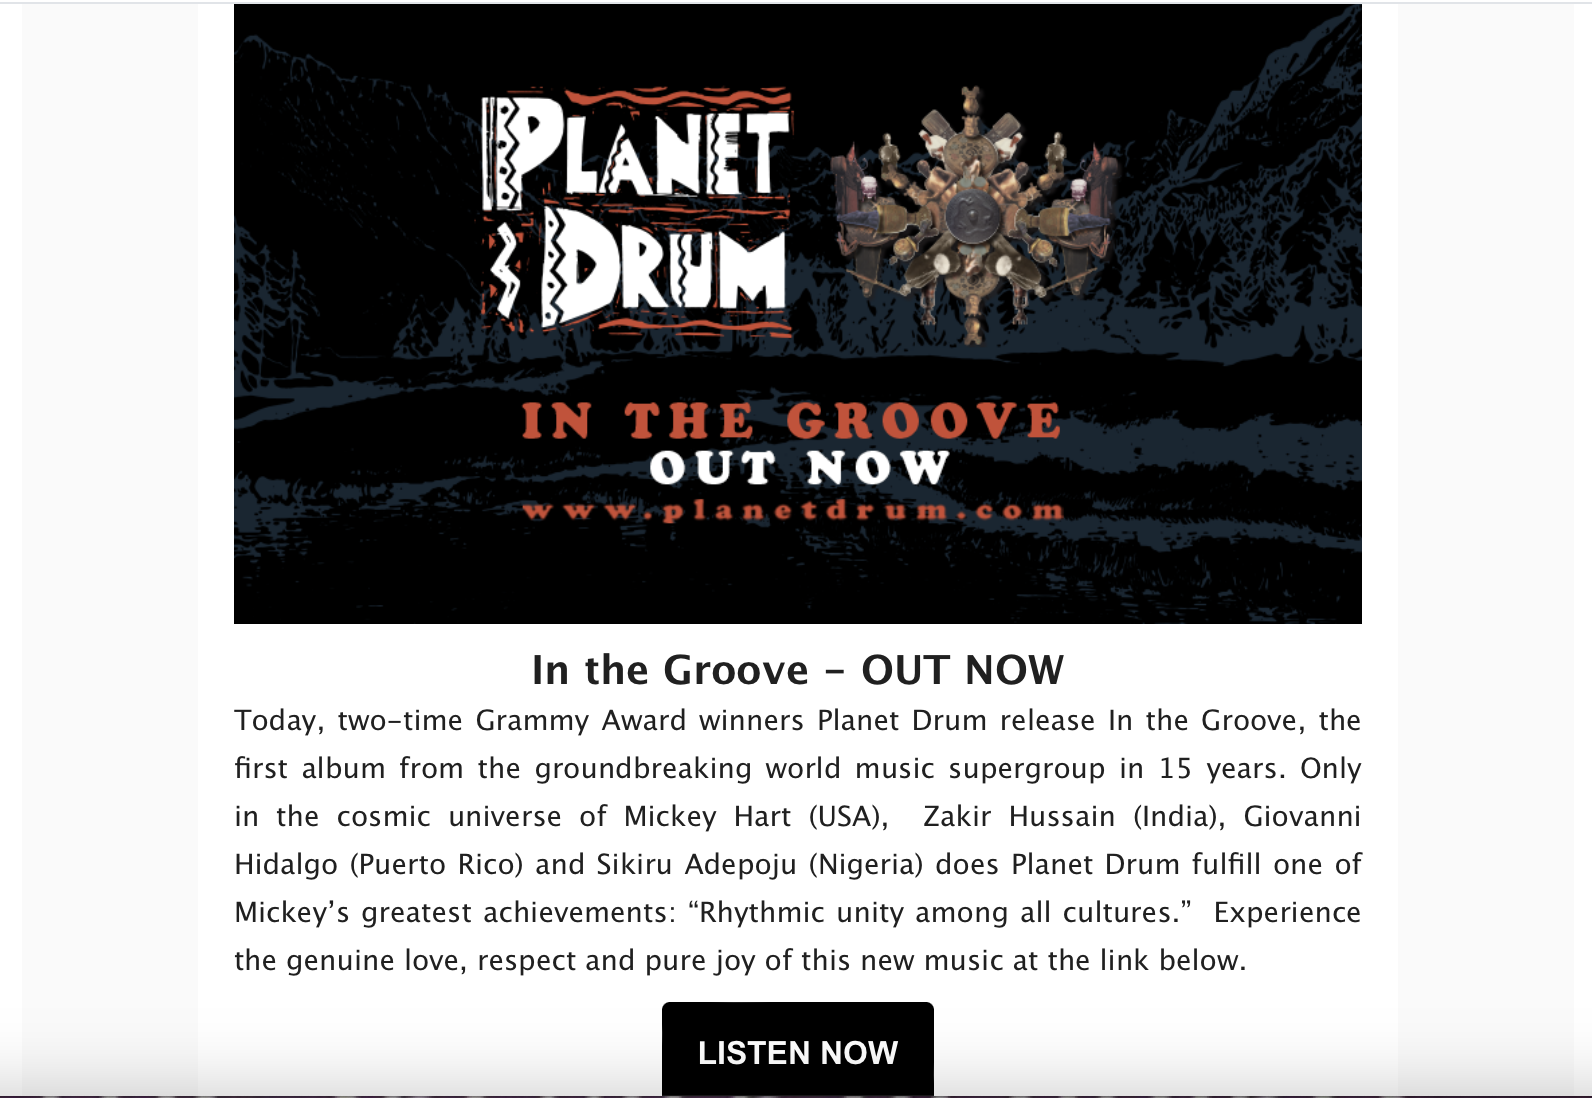 Planet Drum album sales email